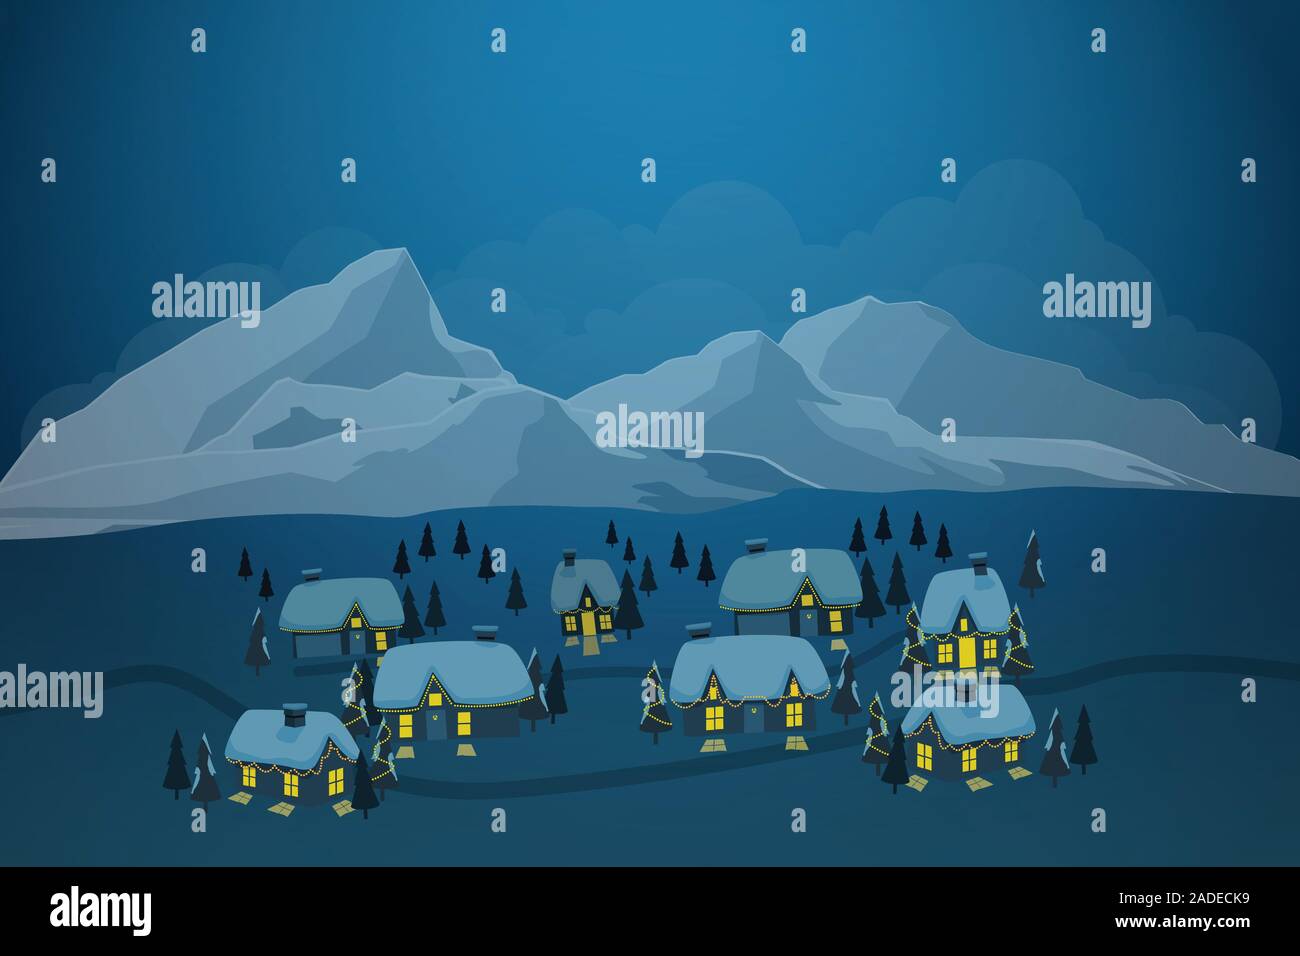 Illustrazione vettoriale della città vecchia di villaggio con la neve sul tetto e iceberg a sfondo nella stagione invernale Illustrazione Vettoriale